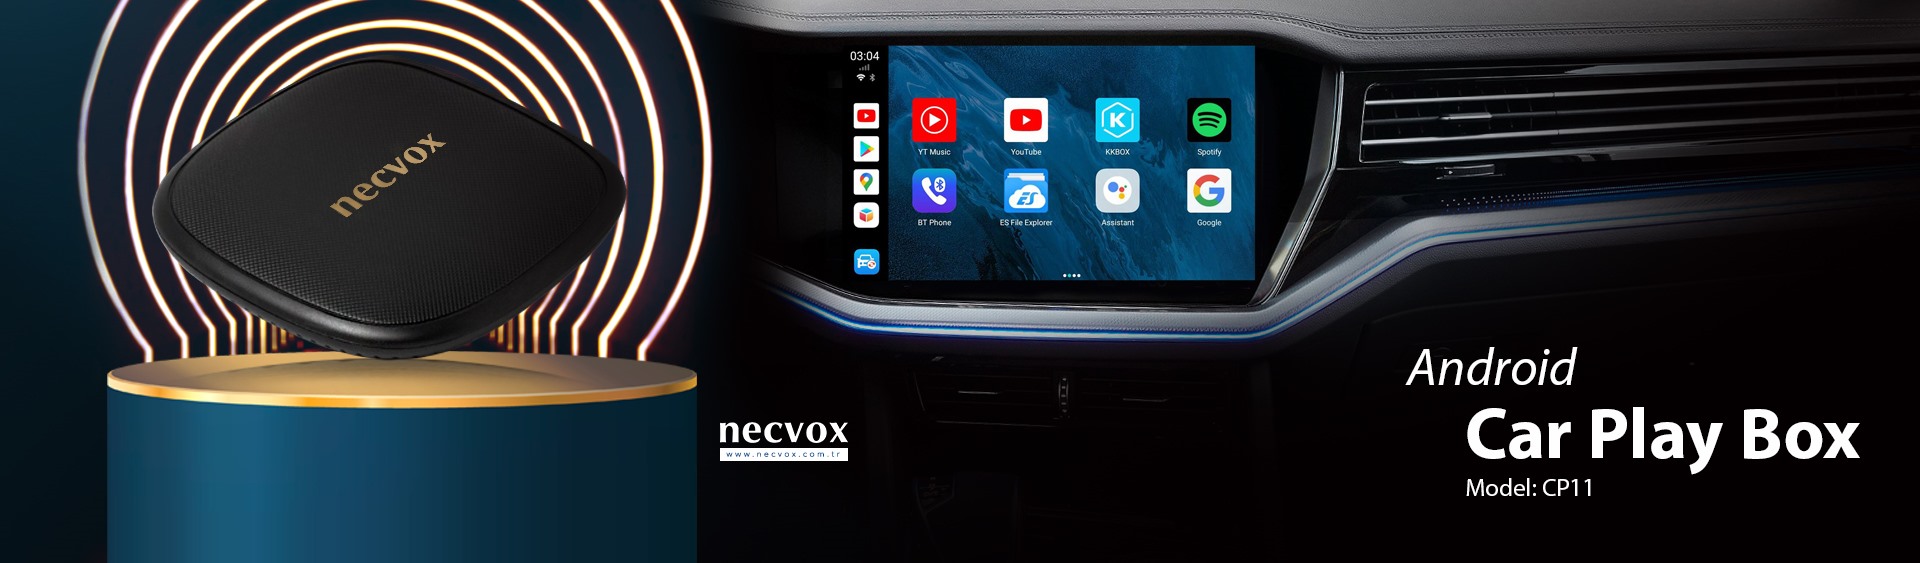 Necvox - Araç Görüntü ve Navigasyon Sistemleri